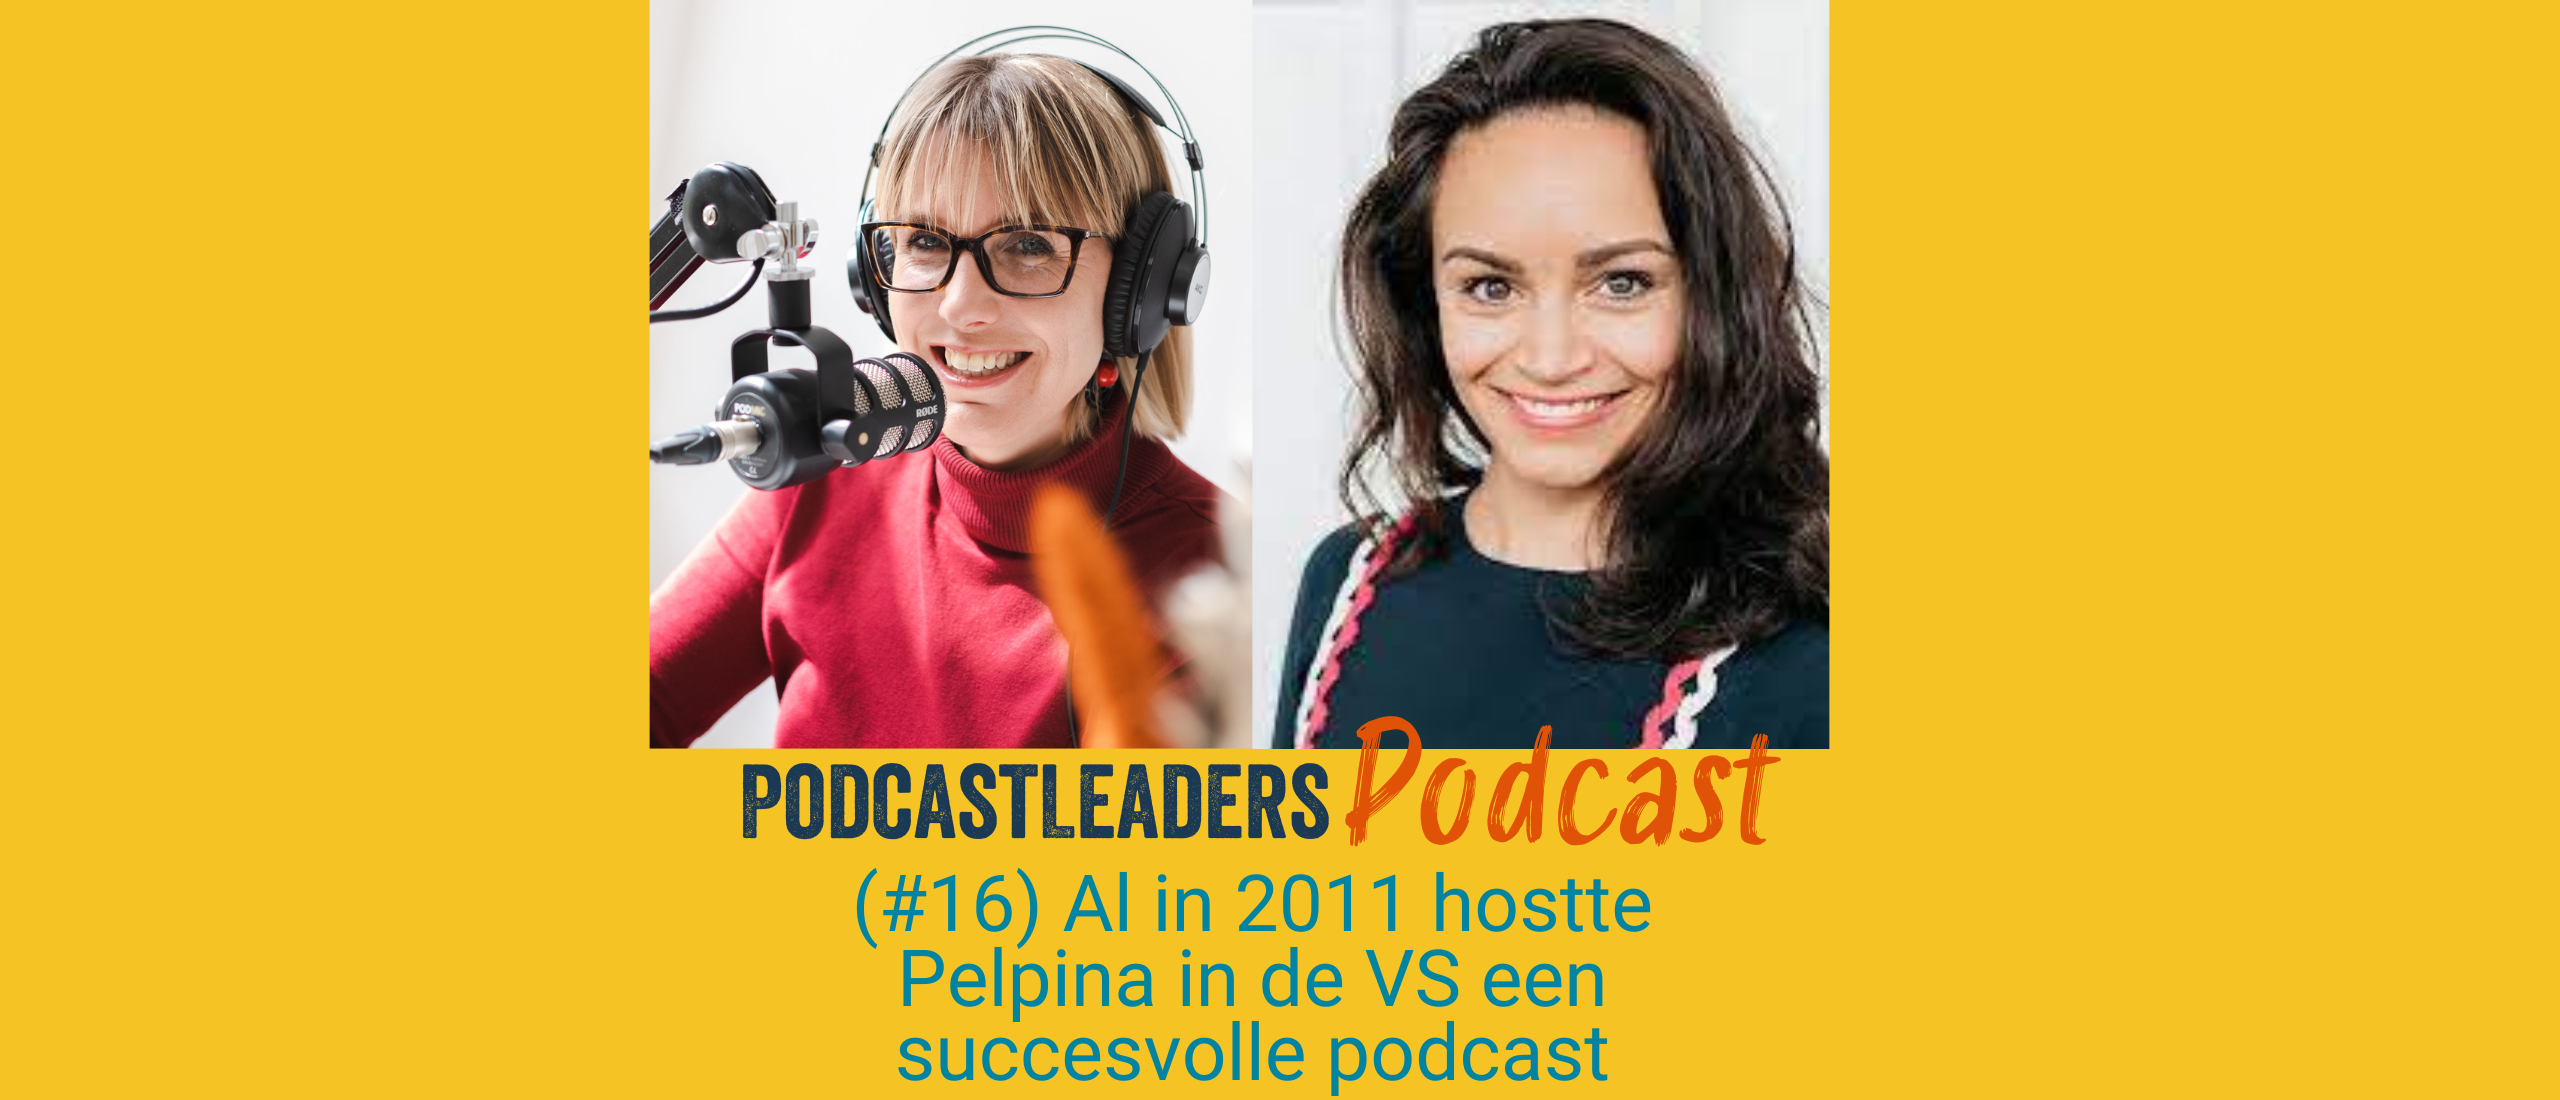 Al in 2011 hostte Pelpina in de VS een succesvolle podcast